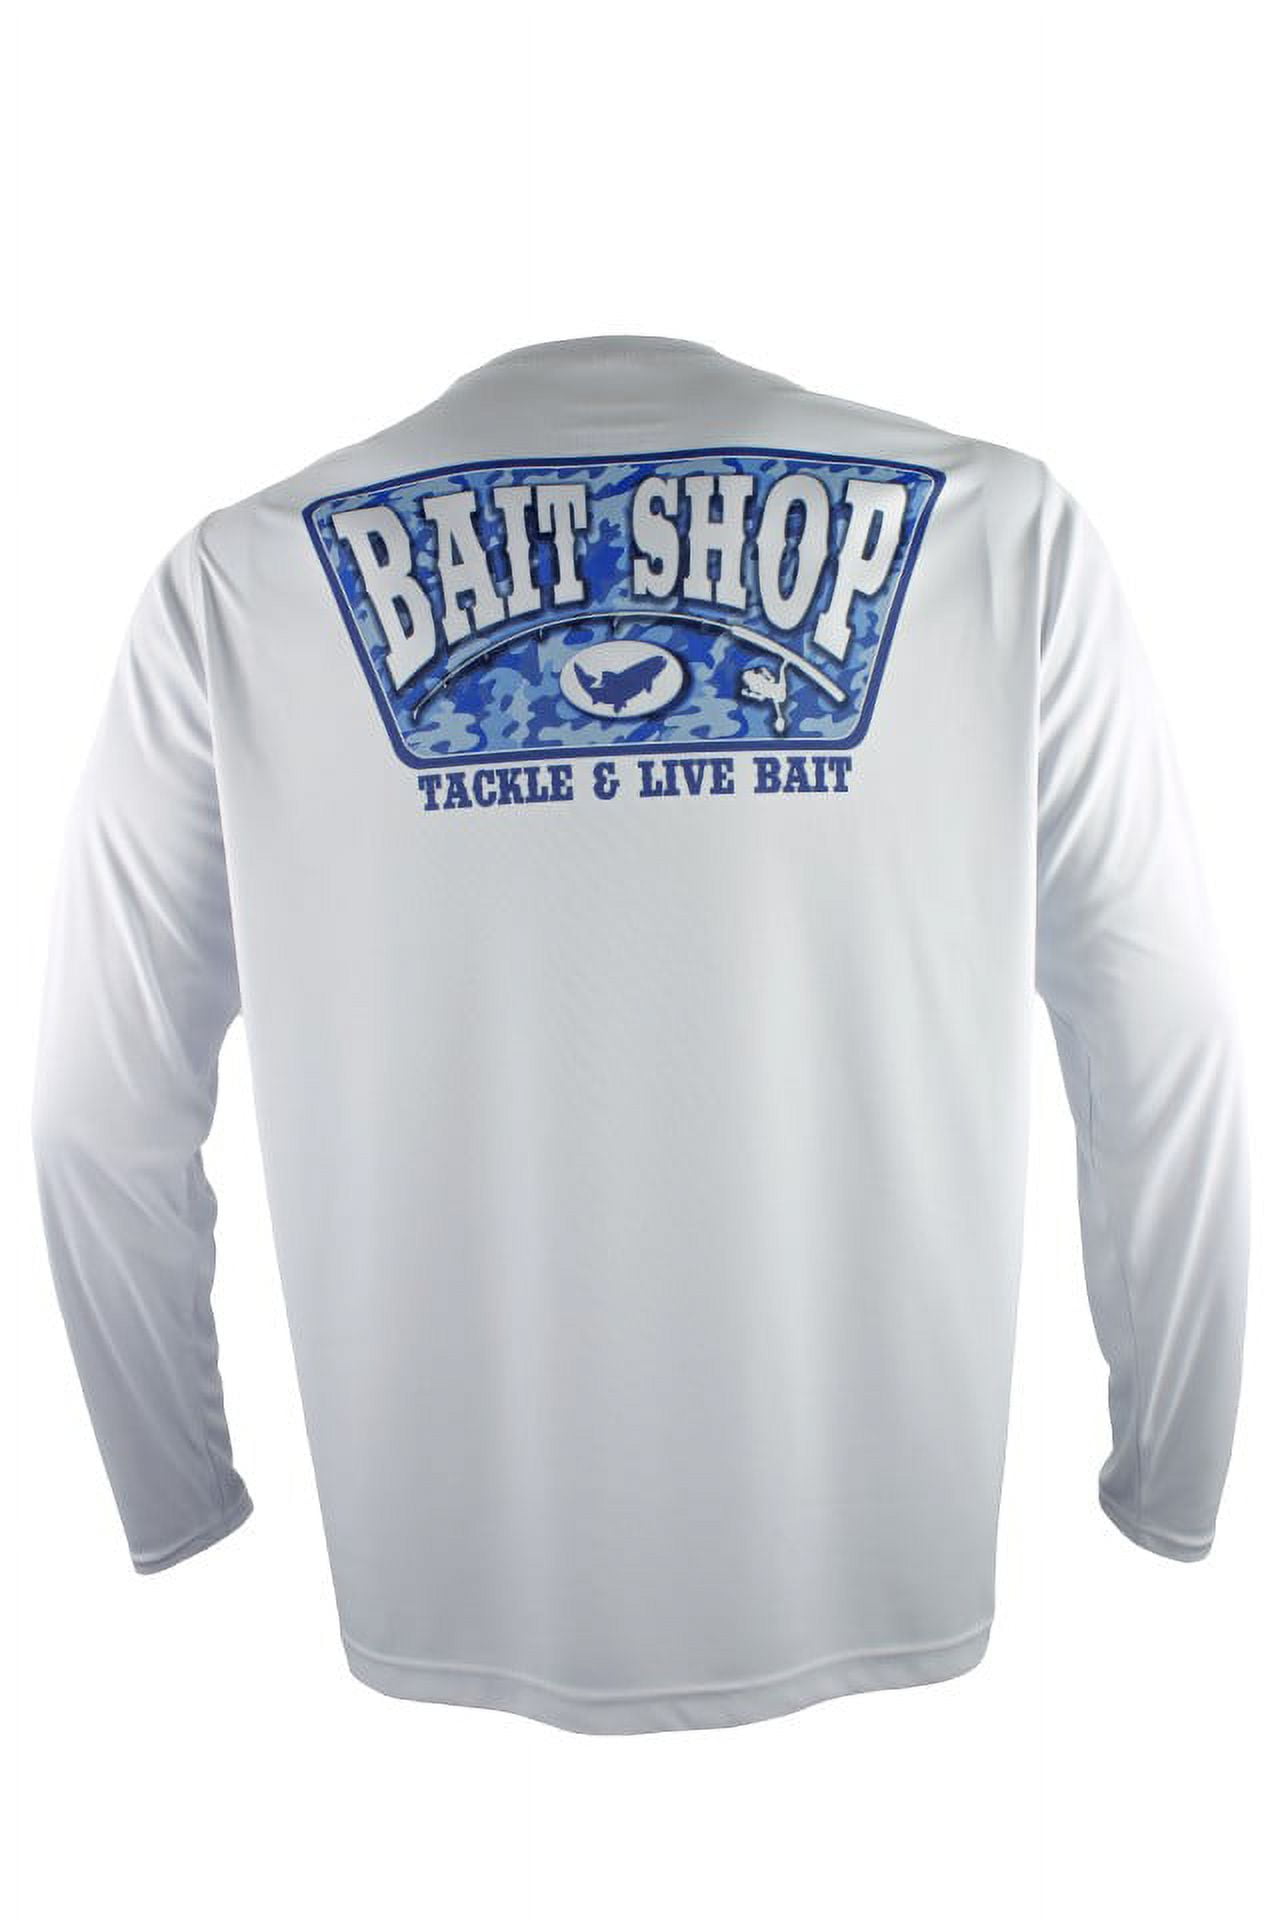 FinTech Long Sleeve Fishing Shirt for Men Camo Bait Shop 